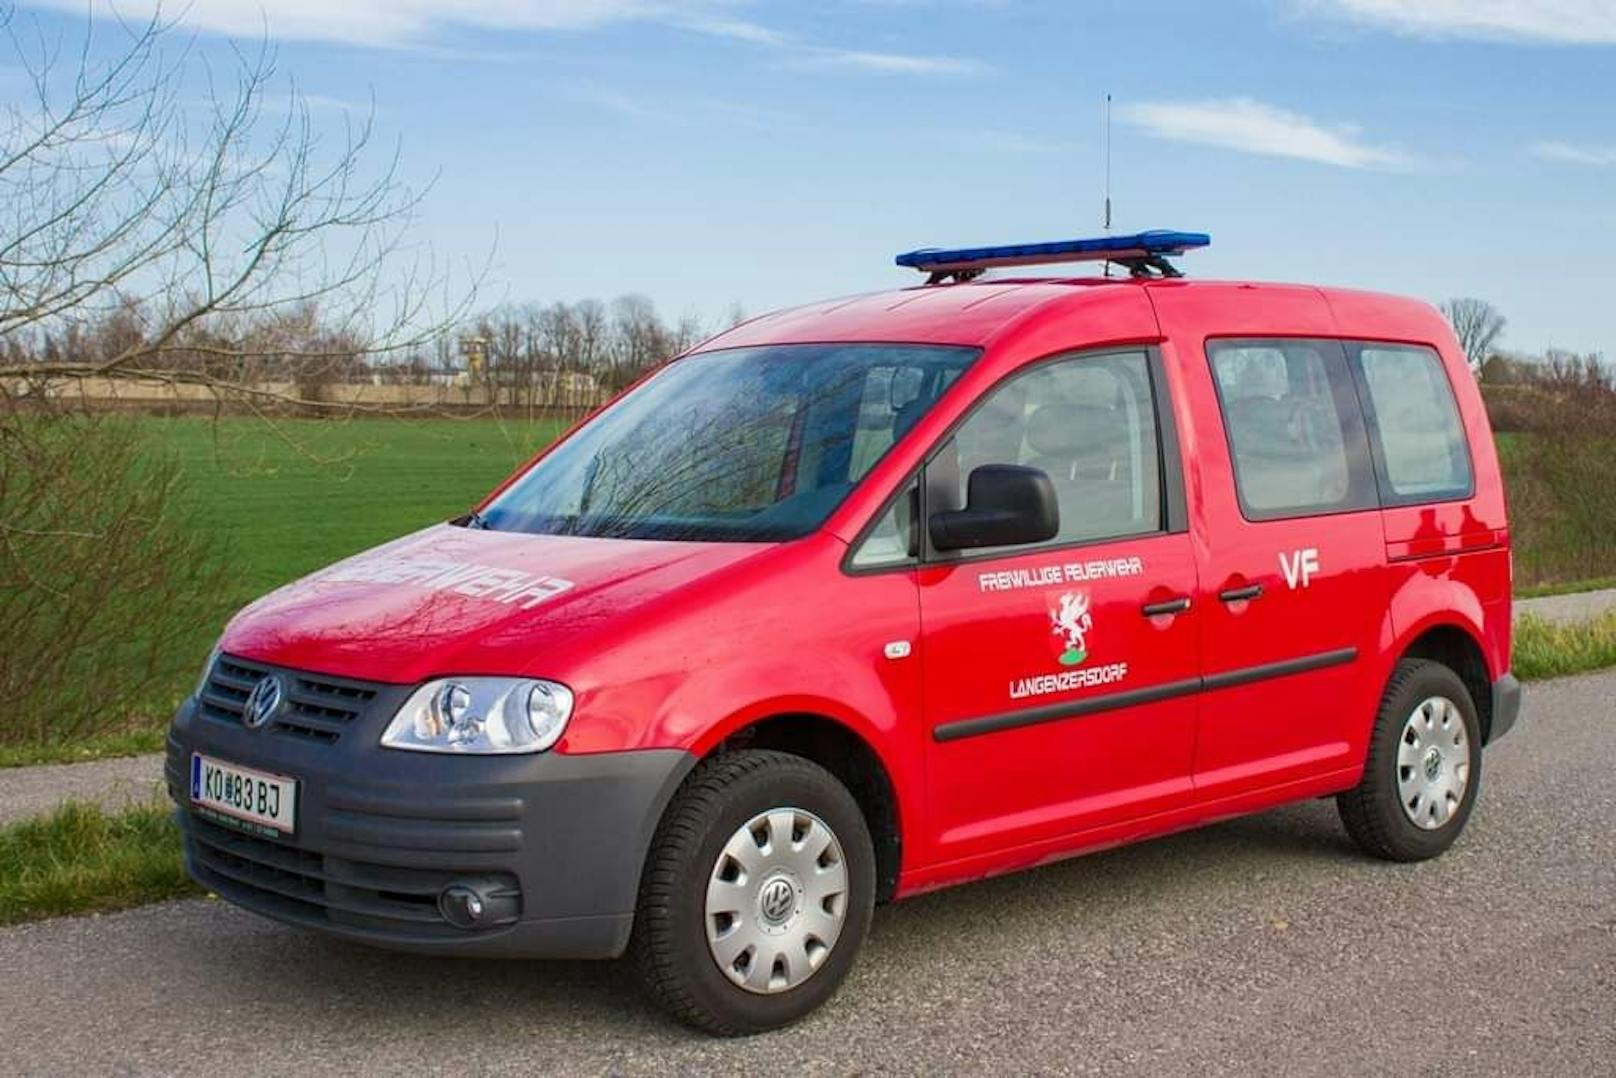 Ab 6.500 Euro kannst du jetzt ein Feuerwehrauto kaufen